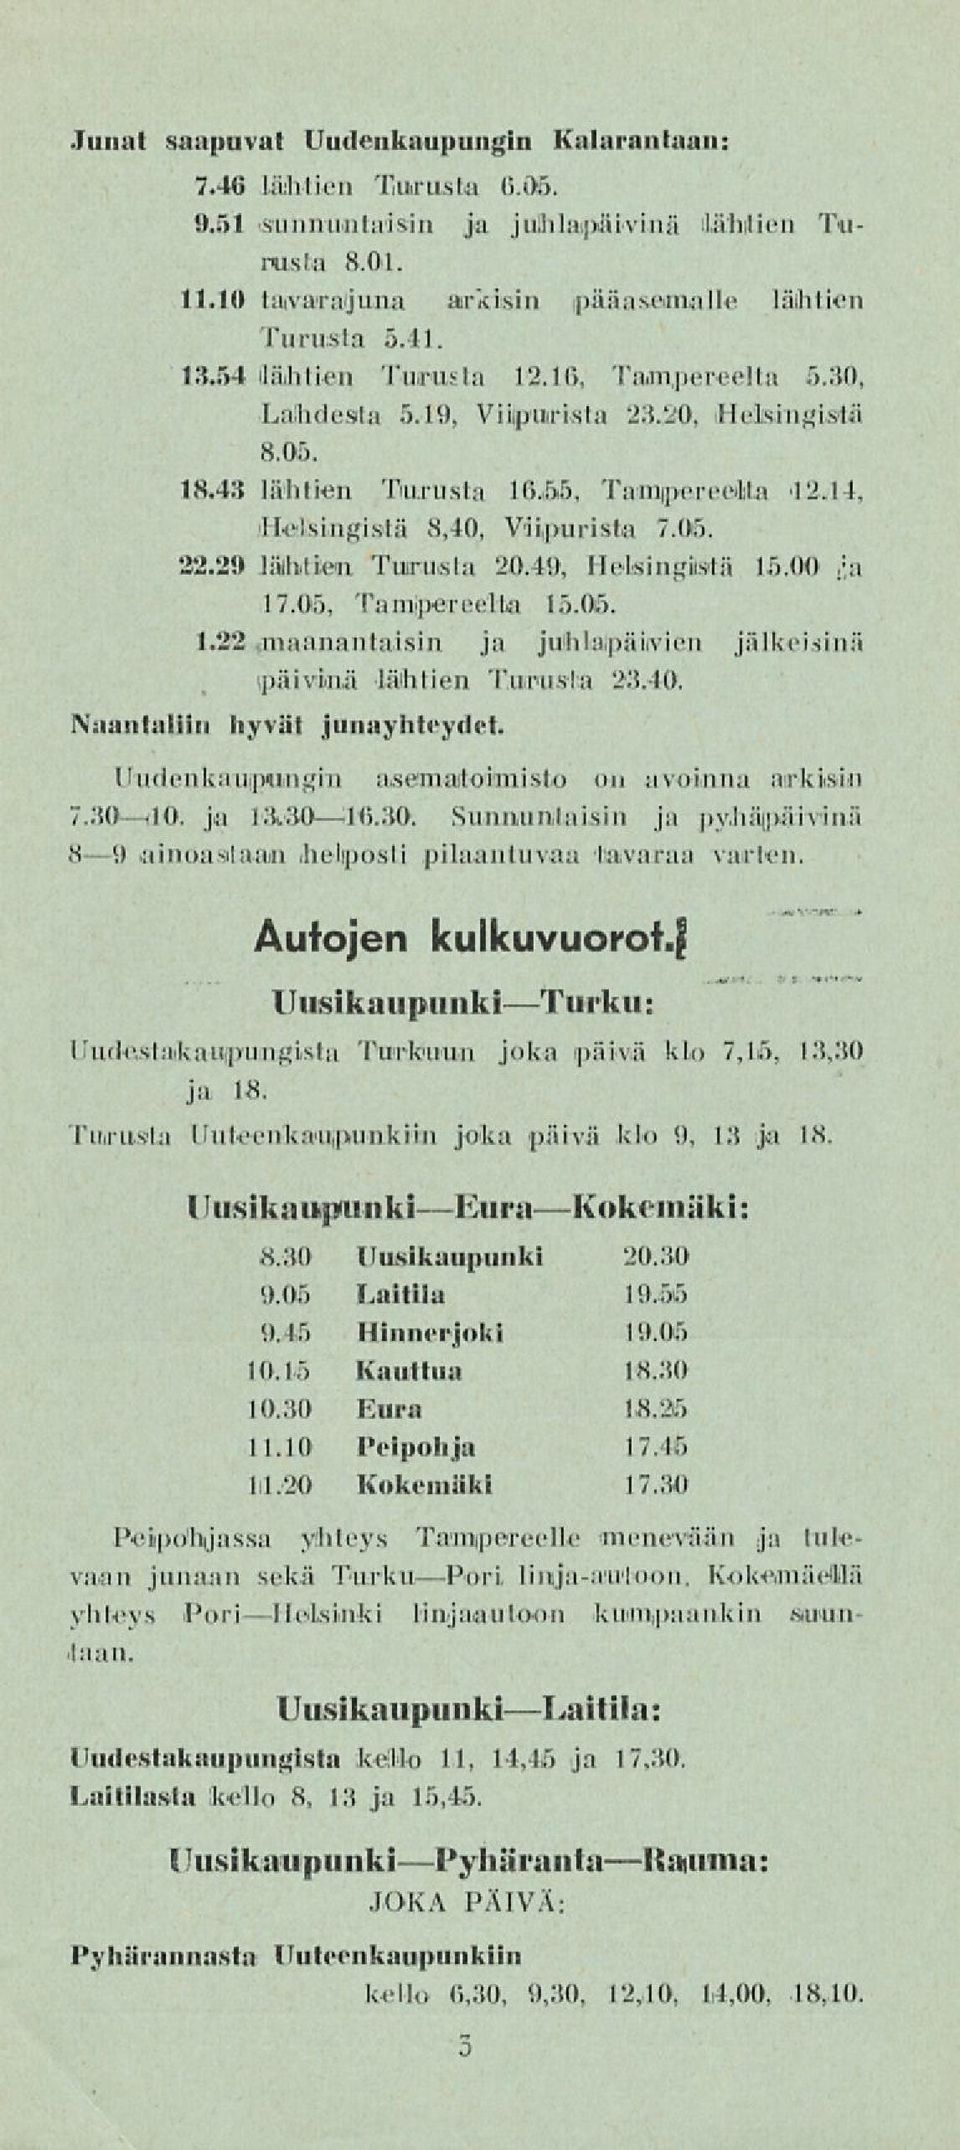 29 lähtien Turusia 20,49, Helsingistä 1,5.00,;a 17.05, Tamipereella 15.05. 1.22..maanantaisin ja juhlapäivien jälkeisinä päivinä lähtien Turusia 23.40. Naantaliin hyvät junayhteydet.